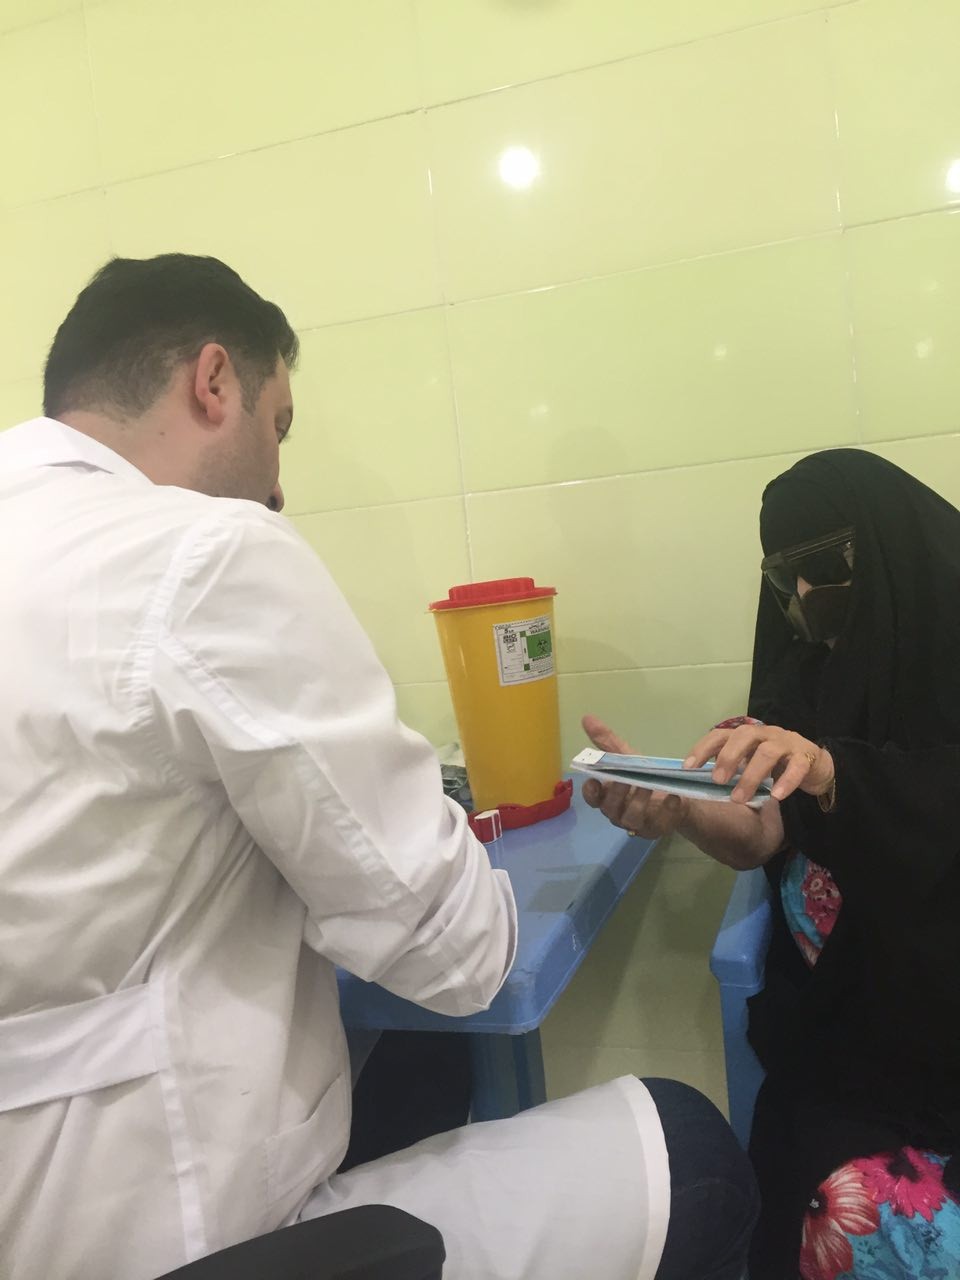 اعزام تیم دوم بهداشتی و درمانی تخصصی توسط سازمان بسیج جامعه پزشکی البرز